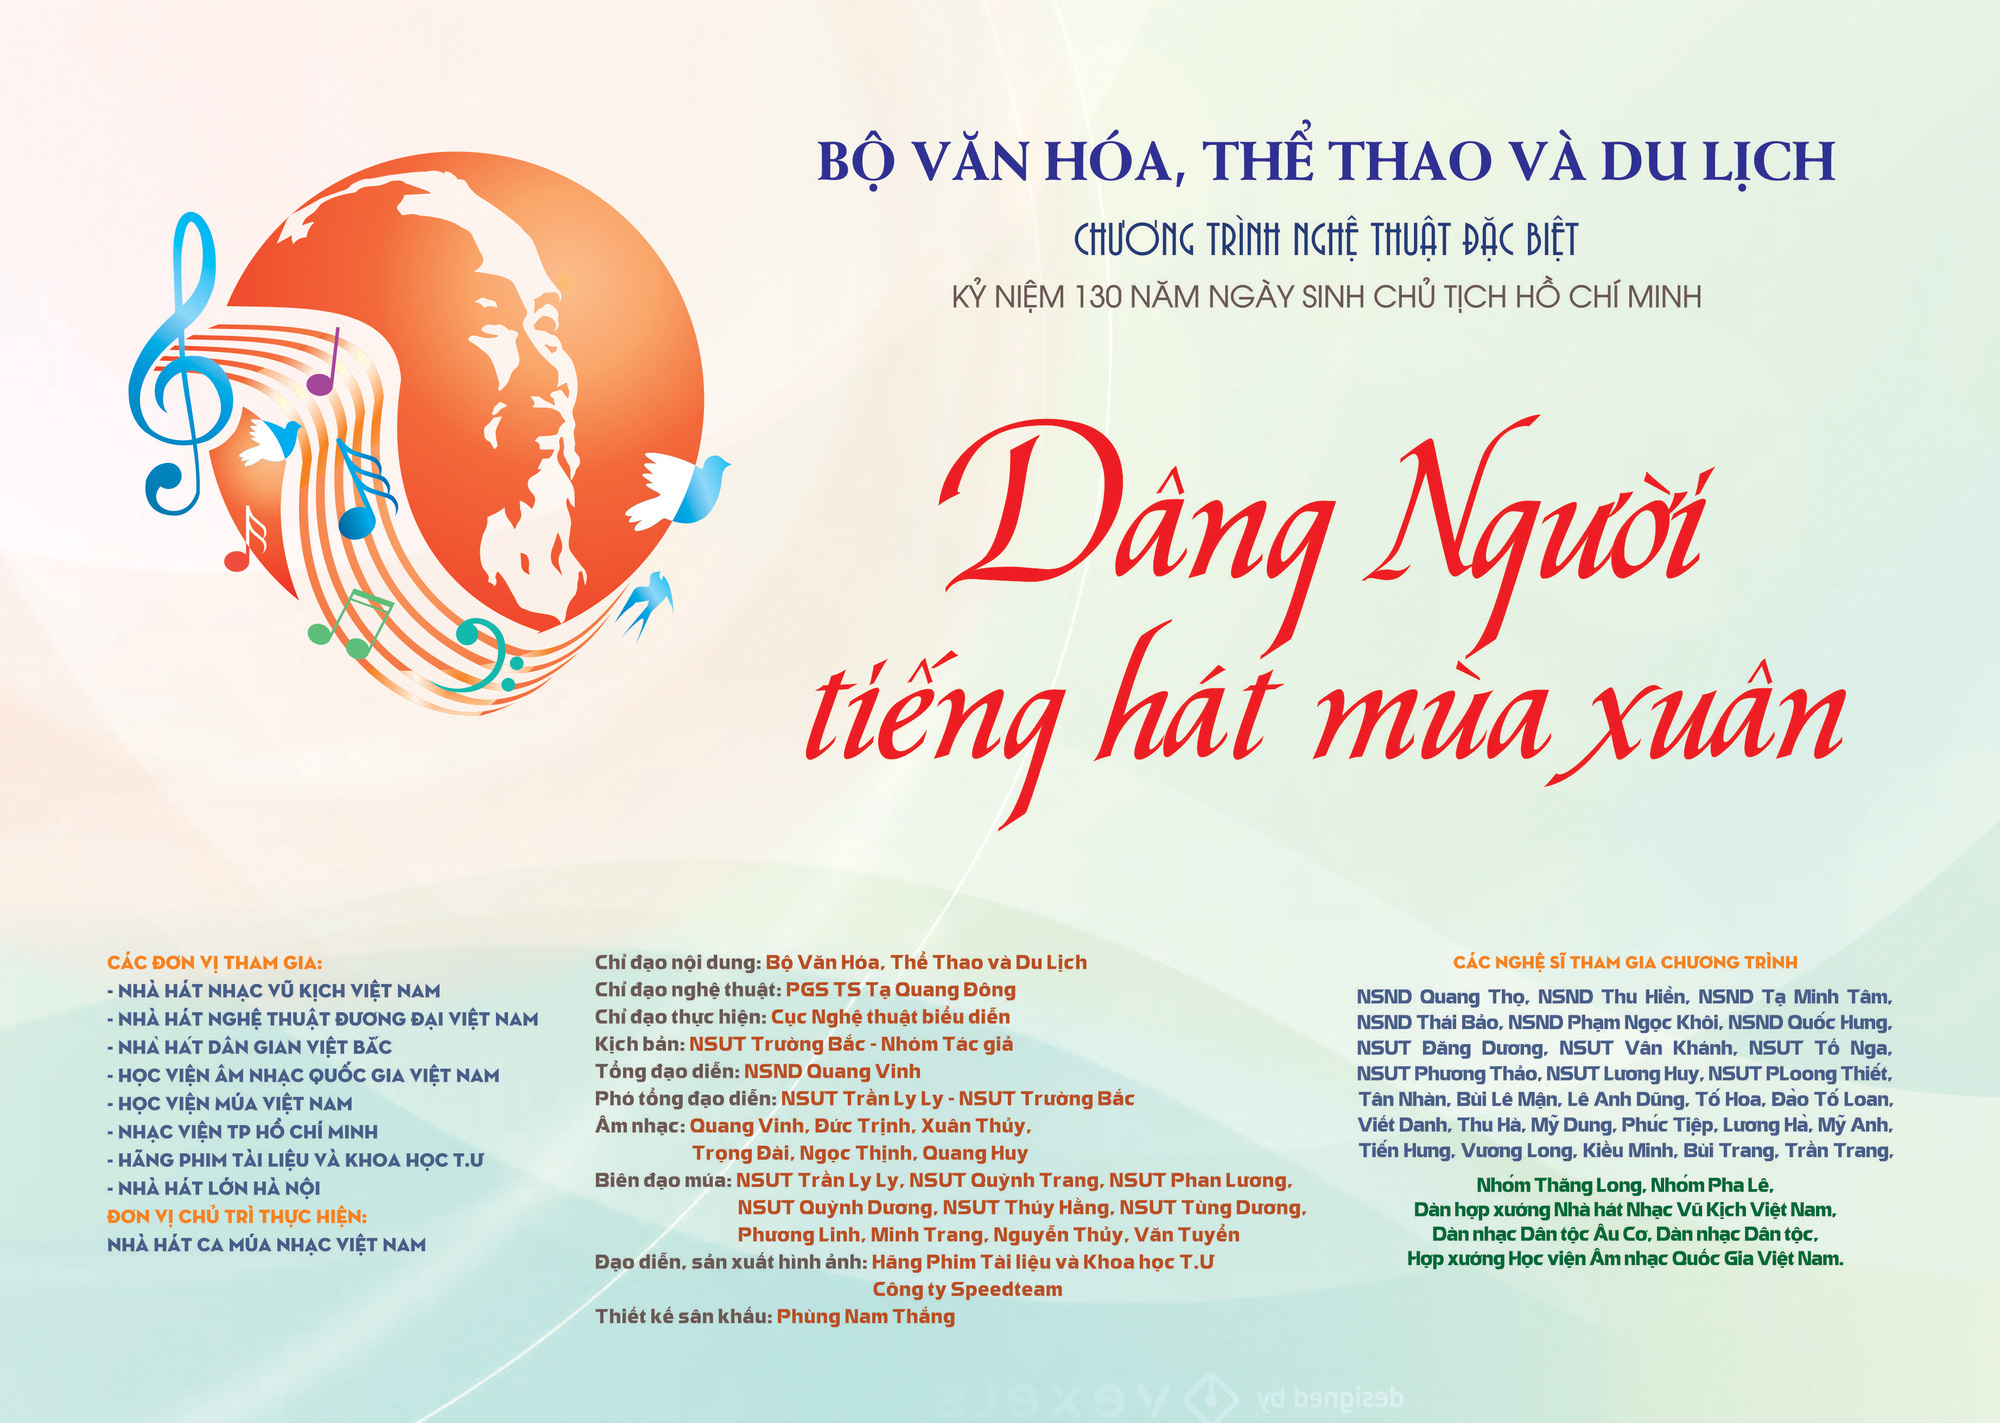 Nghệ sĩ miệt mài tập luyện cho chương trình nghệ thuật đặc biệt Dâng Người tiếng hát mùa Xuân- kỷ niệm 130 năm Ngày sinh Chủ tịch Hồ Chí Minh